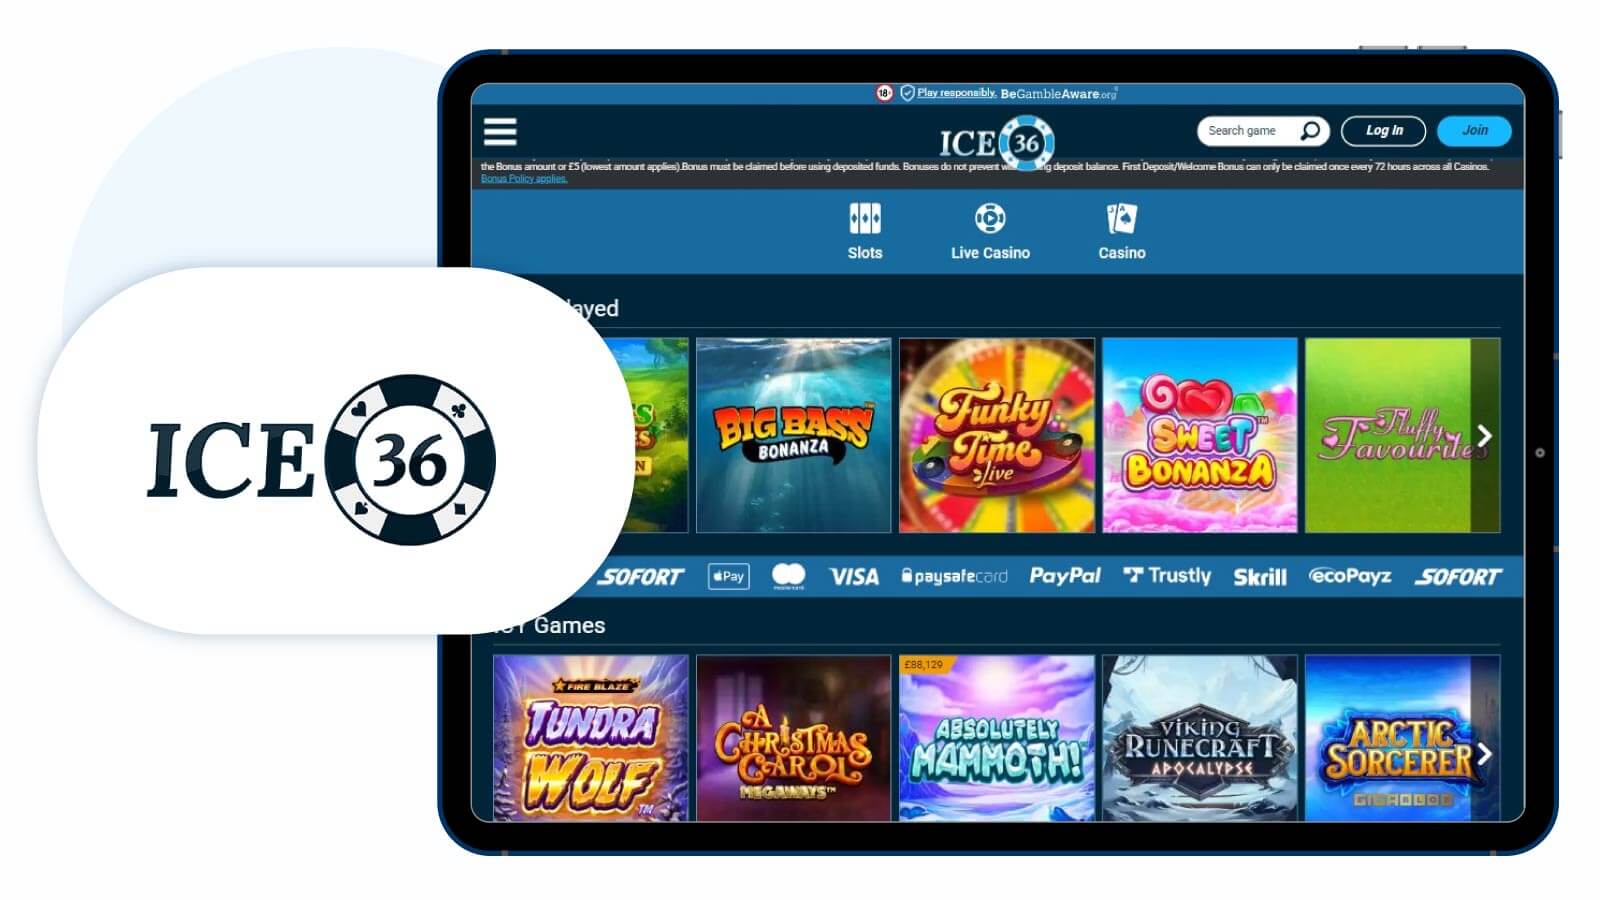 Ice 36 Casino - Best £20 deposit bonus UK for PayPal